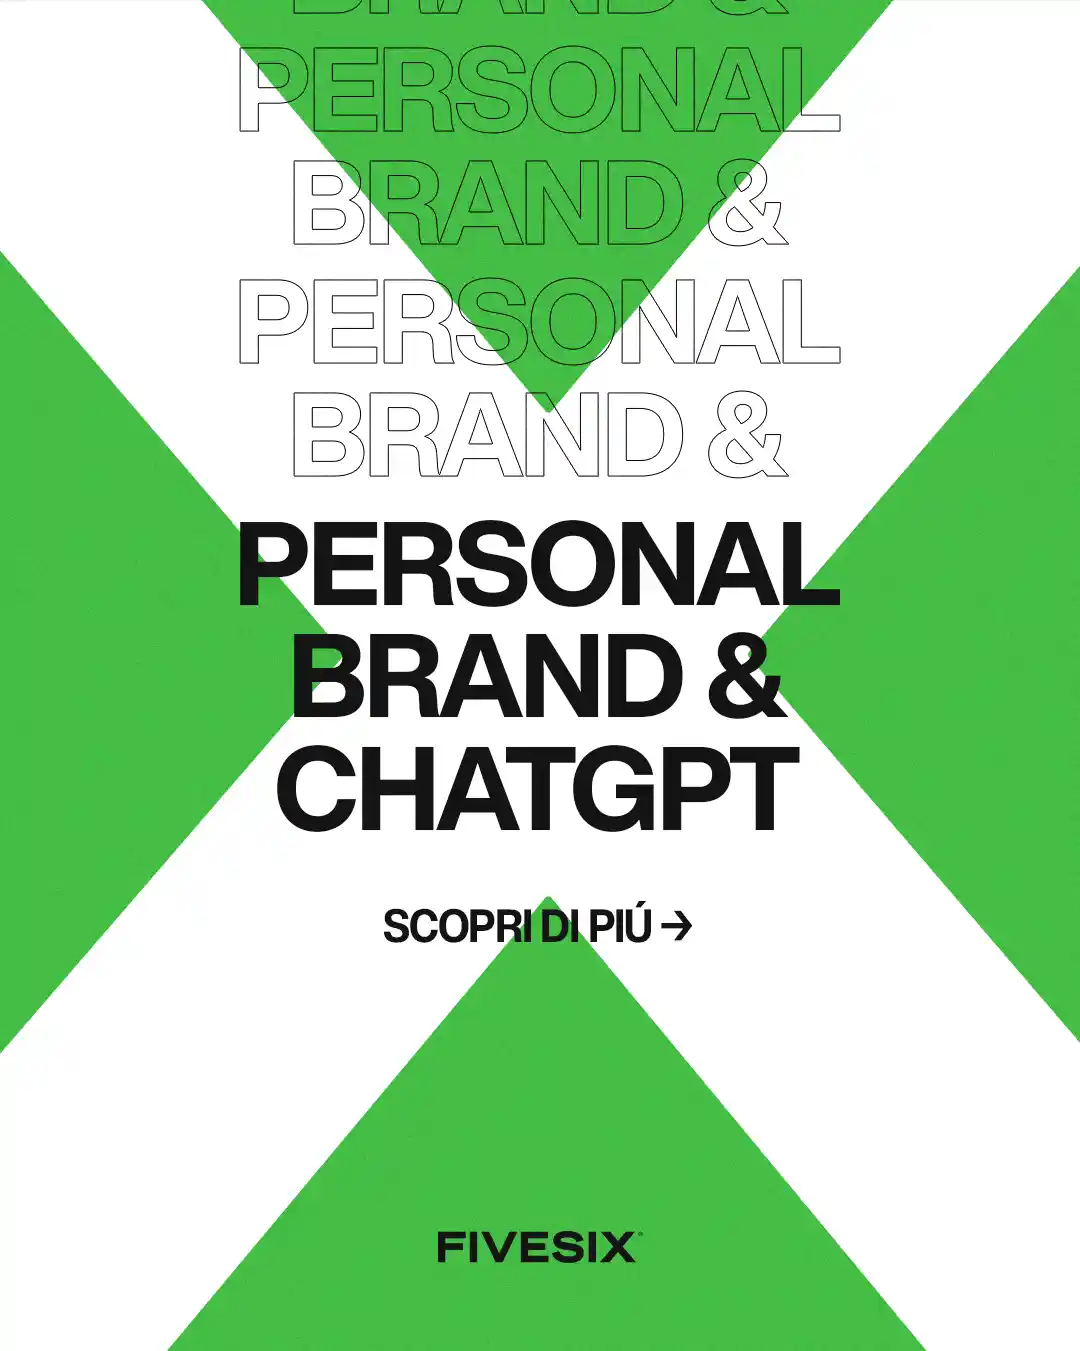 Immagine per 'Come ChatGPT può rivoluzionare il tuo personal branding per aumentare i profitti' - Fivesix Studio. Specializzati in Branding, Personal Branding, Marketing e Comunicazione.